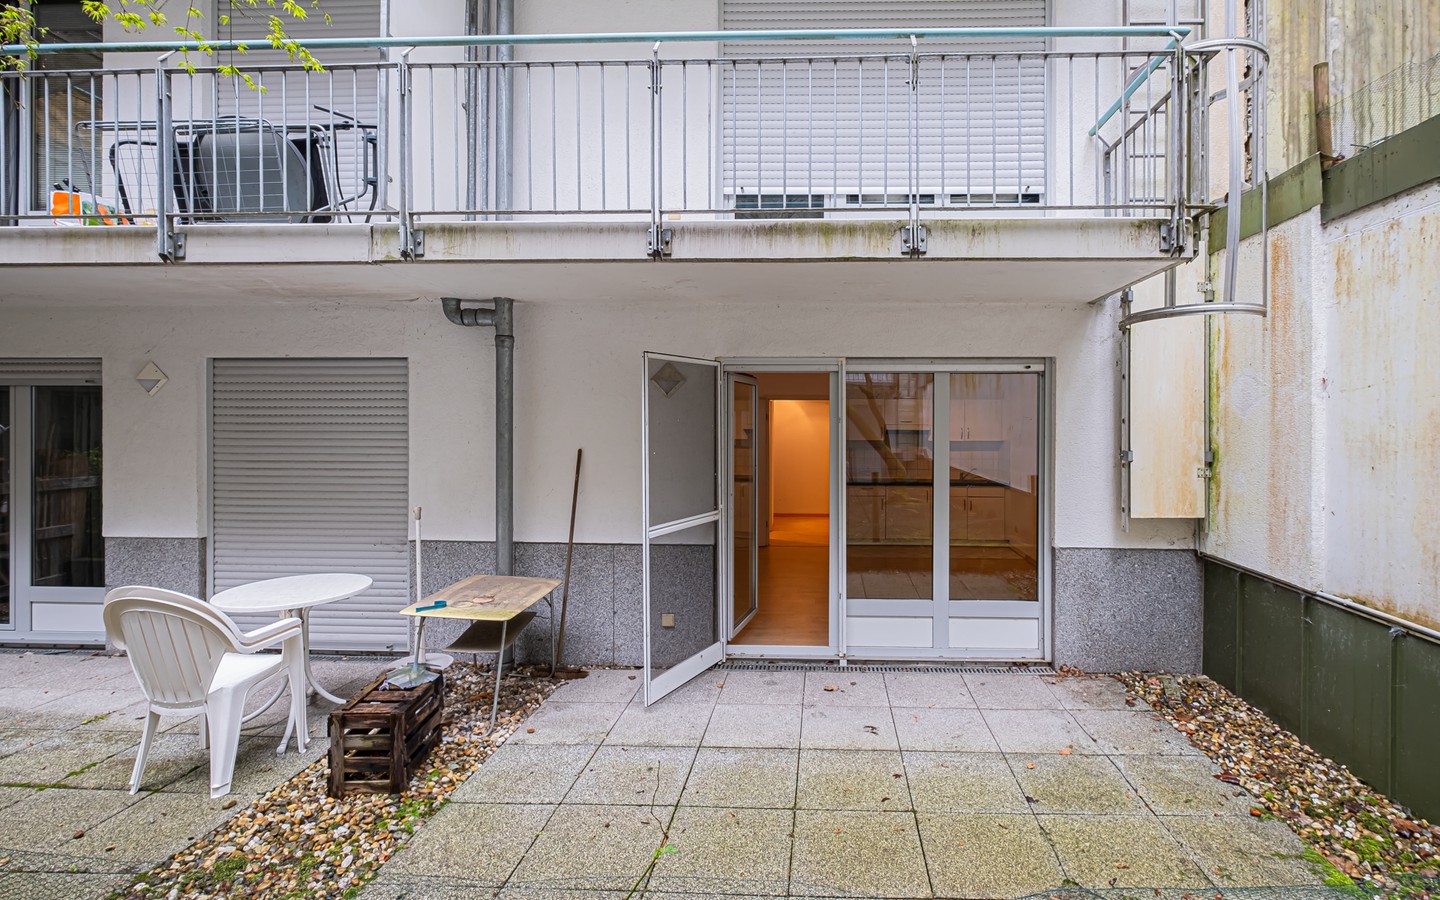 Terrasse - 1-Zimmer-Wohnung in der Heidelberger Altstadt mit Terrasse und Einbauküche